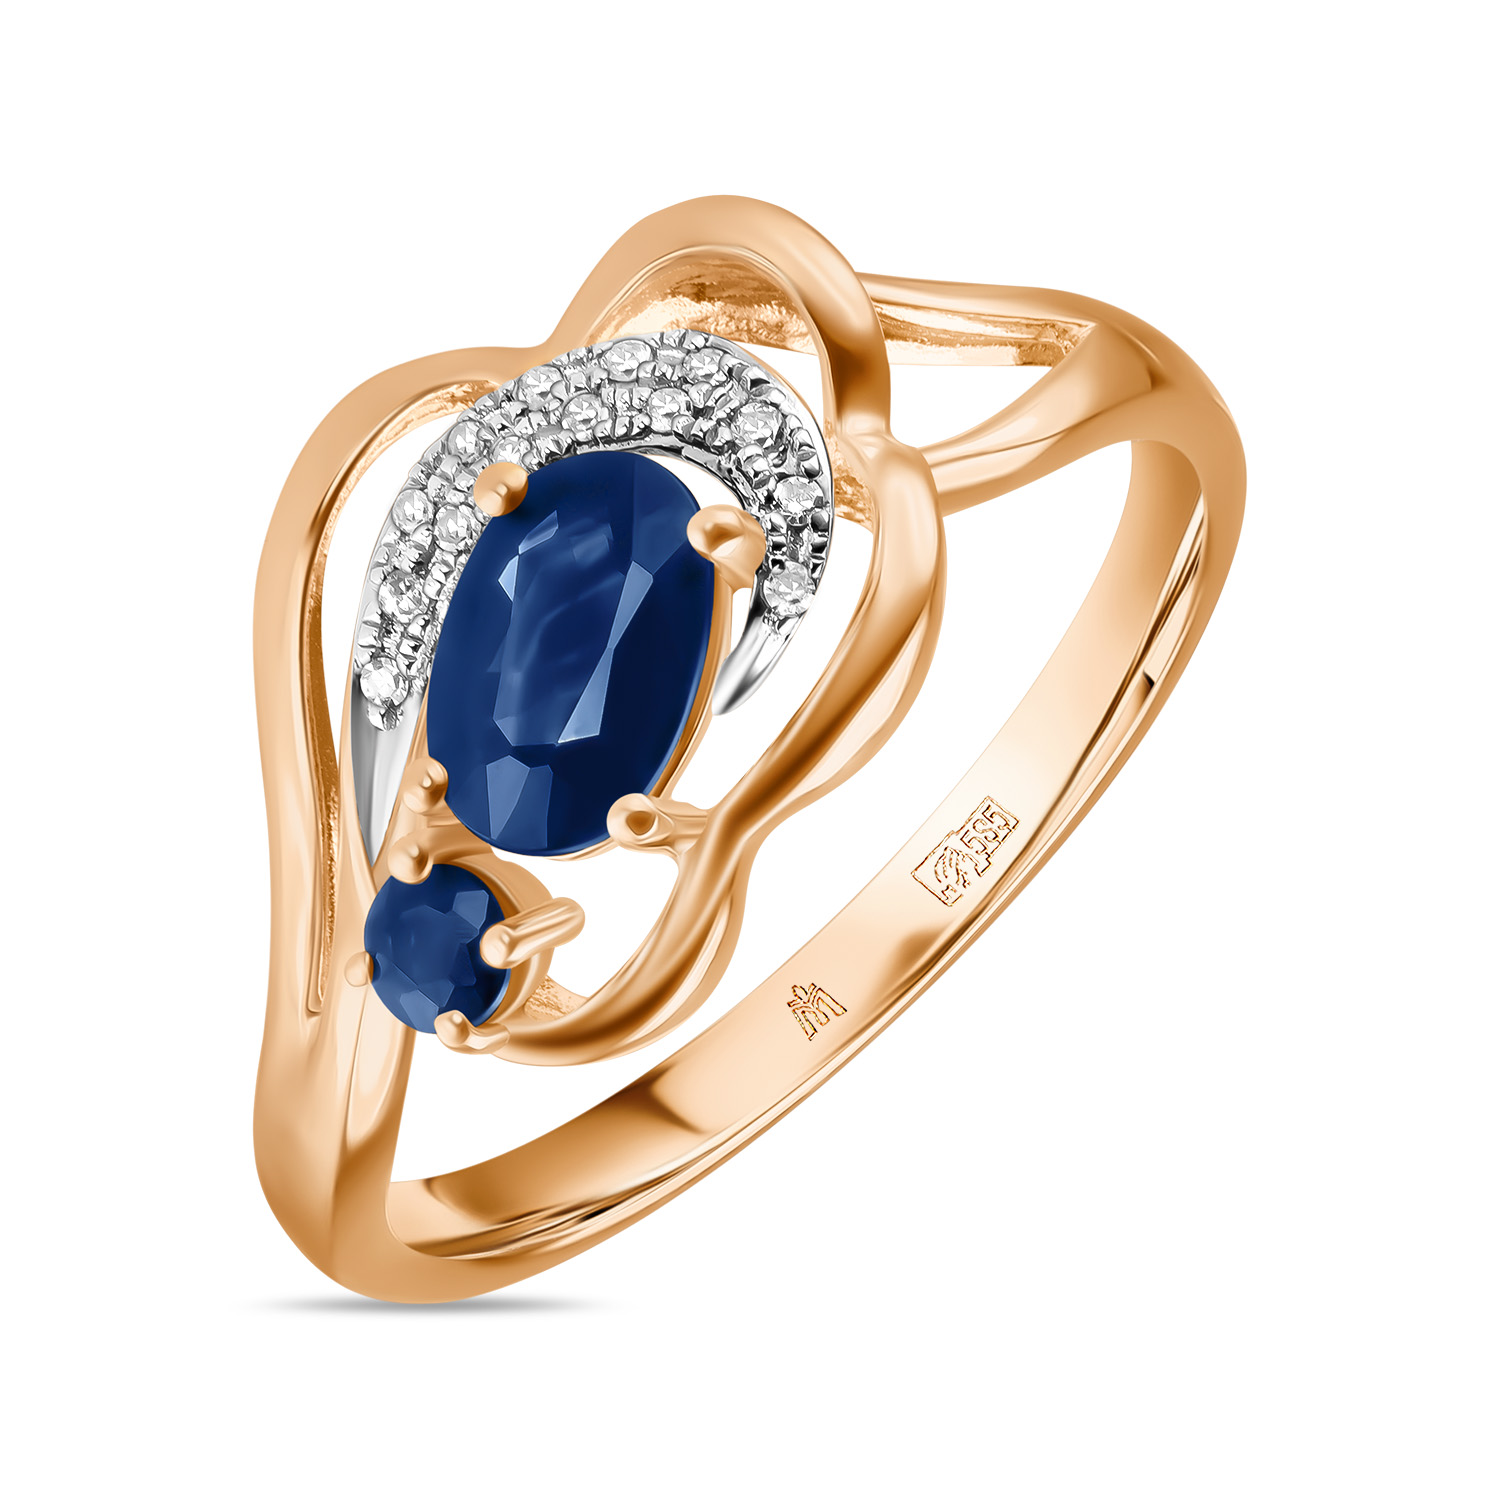 Кольца МЮЗ Золотое кольцо с бриллиантами и сапфирами 24395